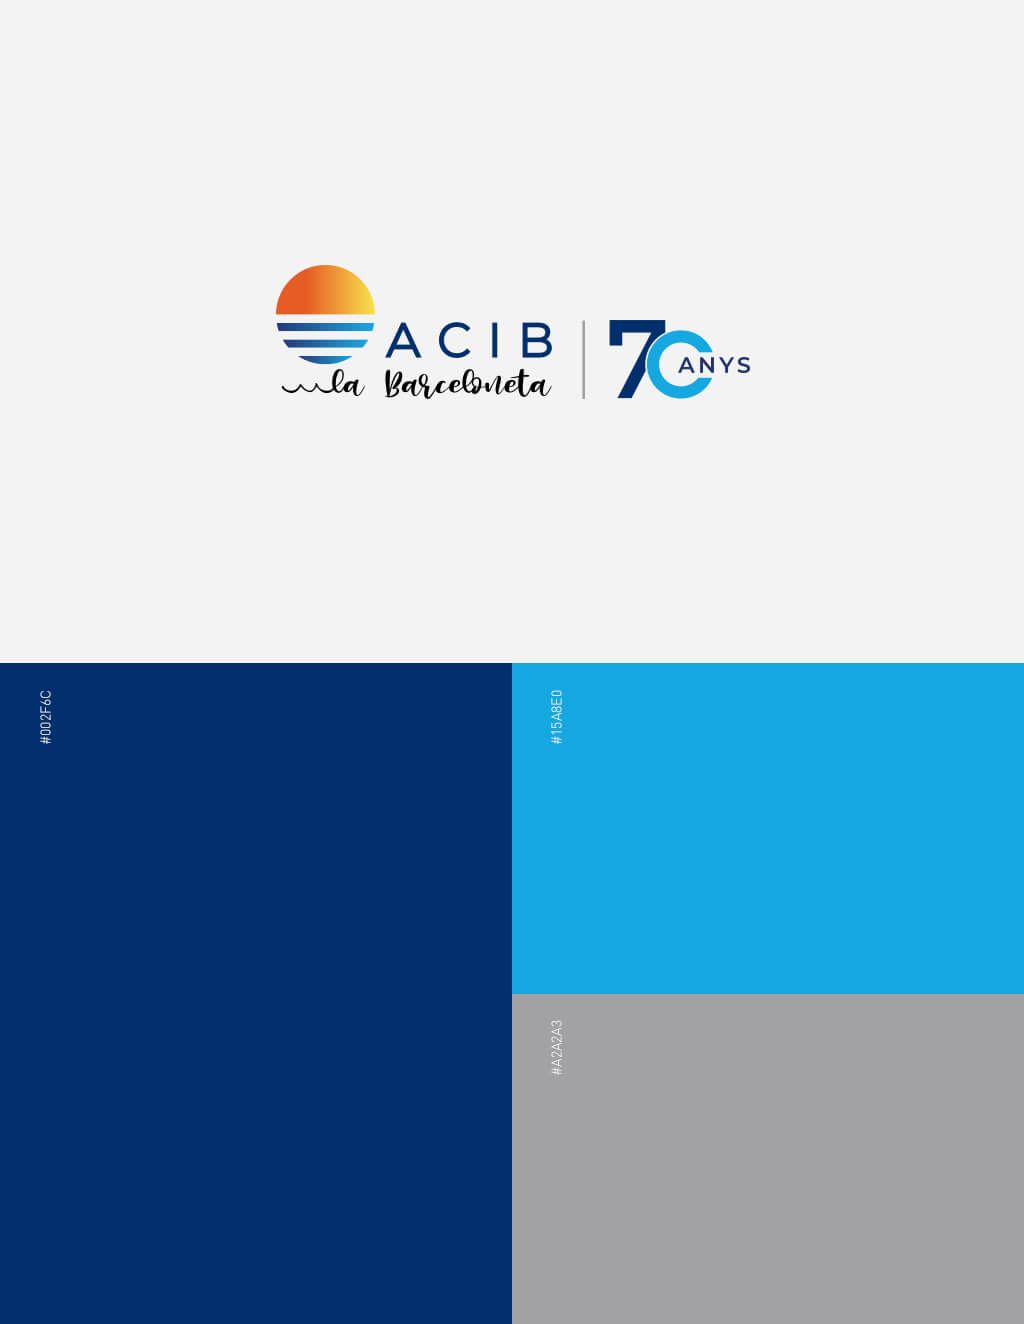 ACIB - 70 anys Imatge Corporativa